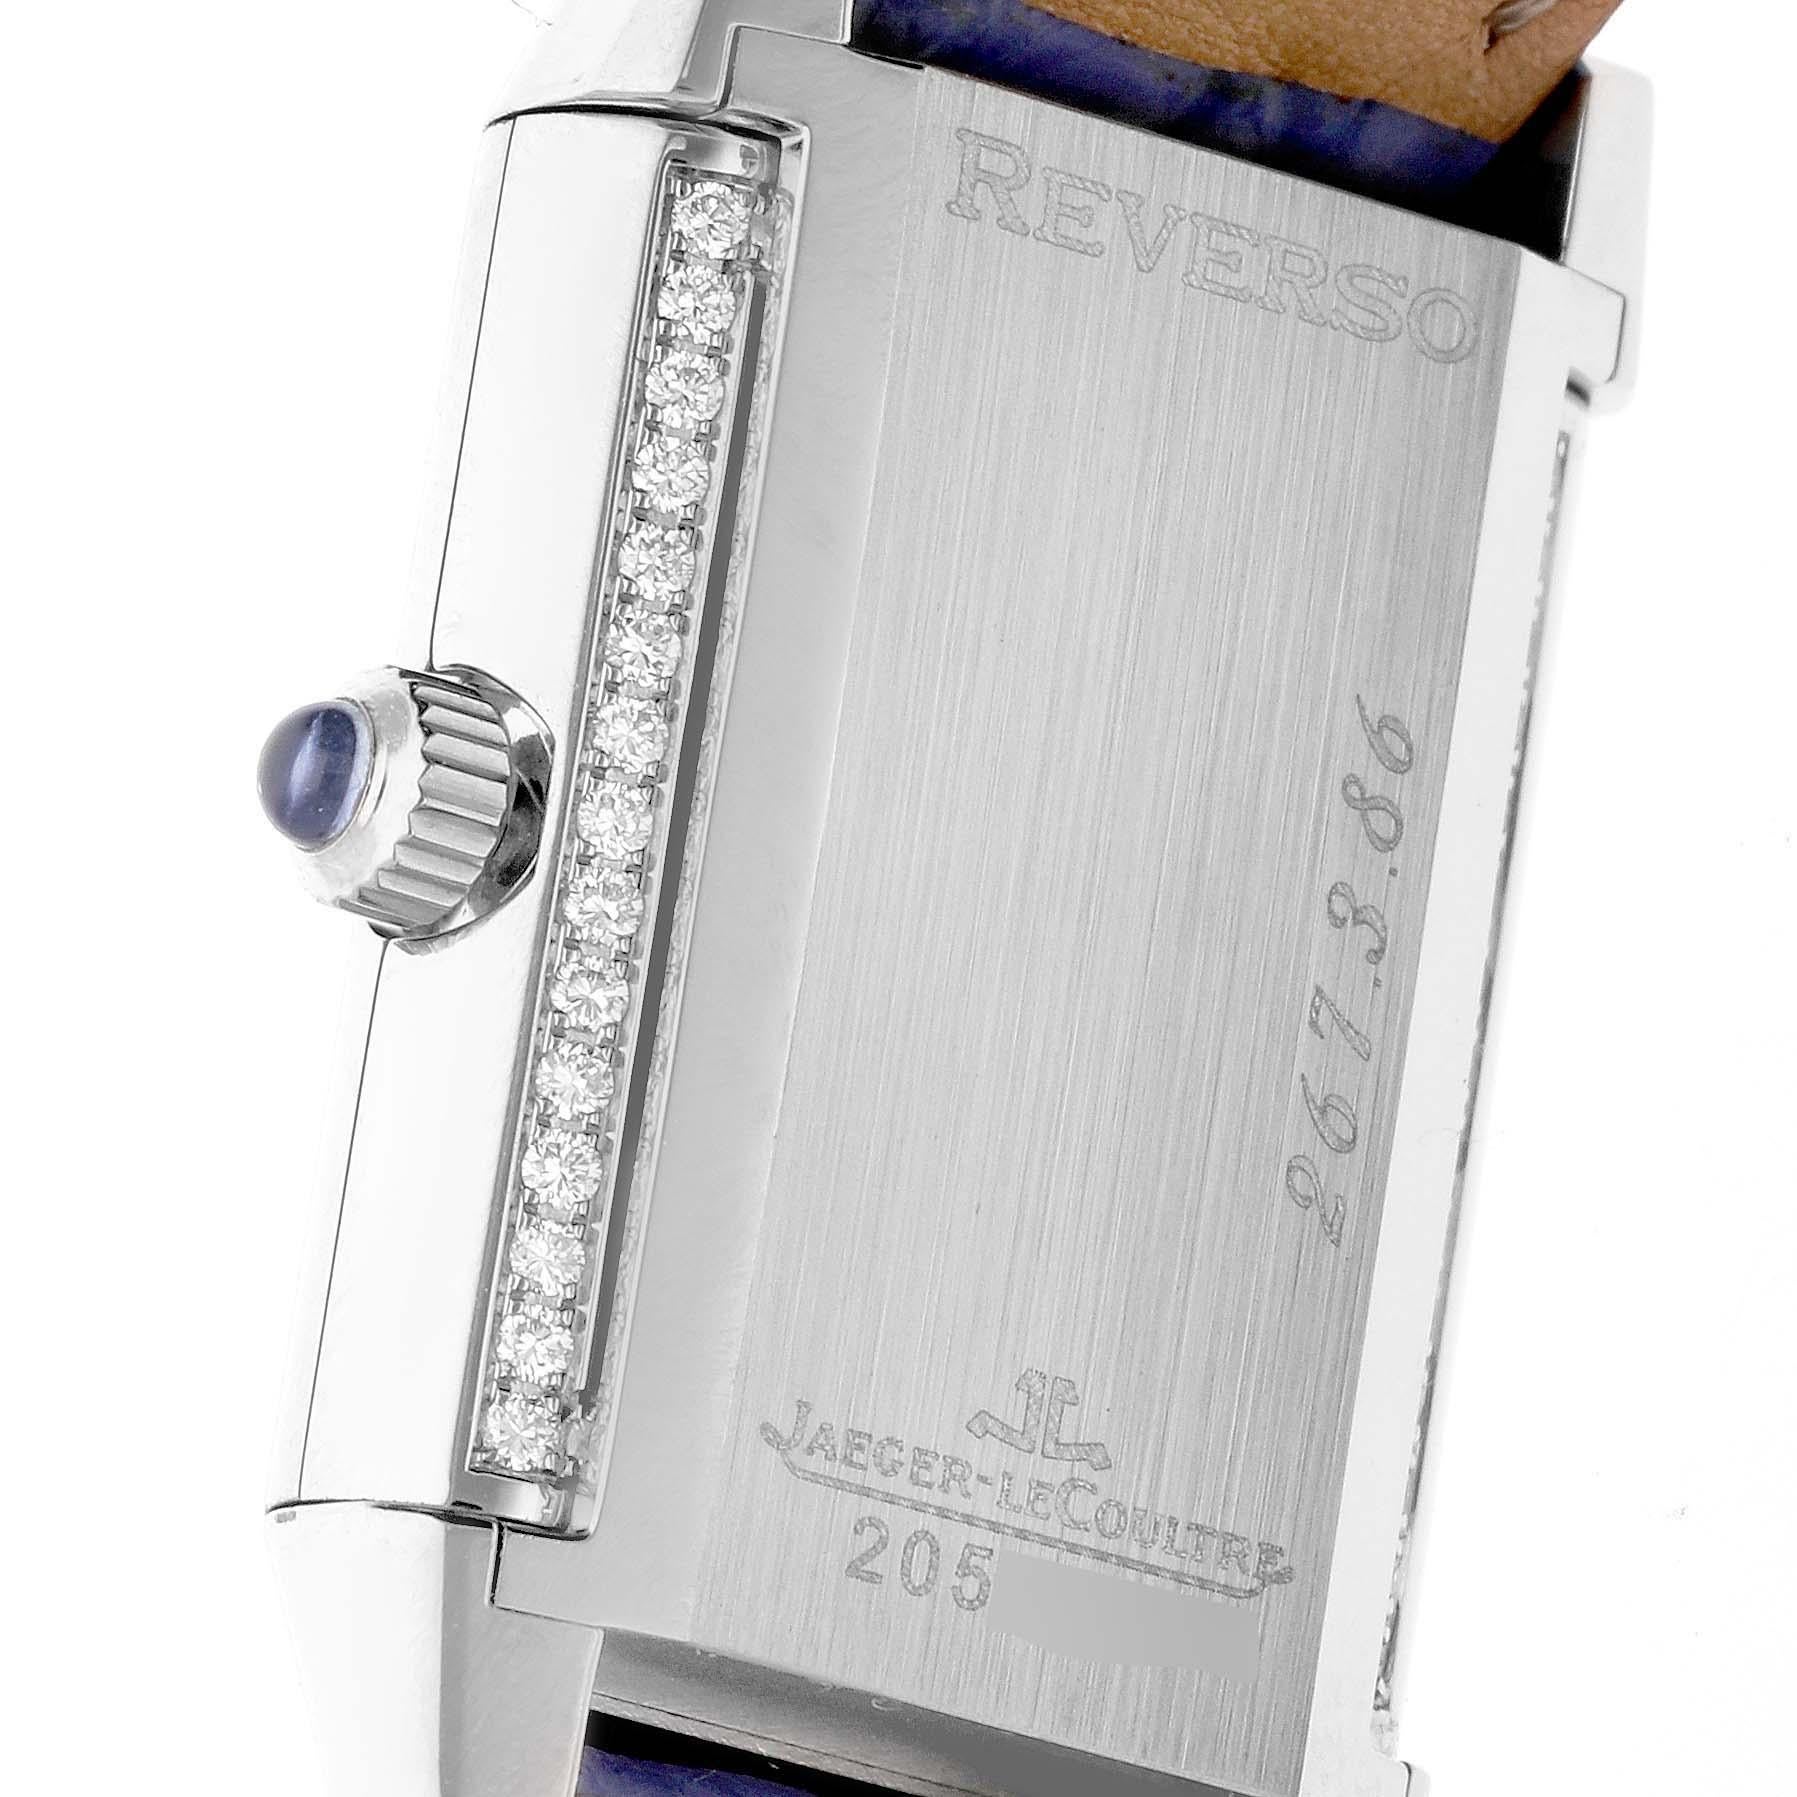 Jaeger LeCoultre Reverso Joaillerie White Gold Diamond Ladies Watch 267.3.86 Q2623403. Mouvement à remontage manuel. Boîtier rotatif rectangulaire en or blanc 18 carats de 33 x 20 mm. Couronne sertie d'un saphir bleu. Diamants d'origine de la